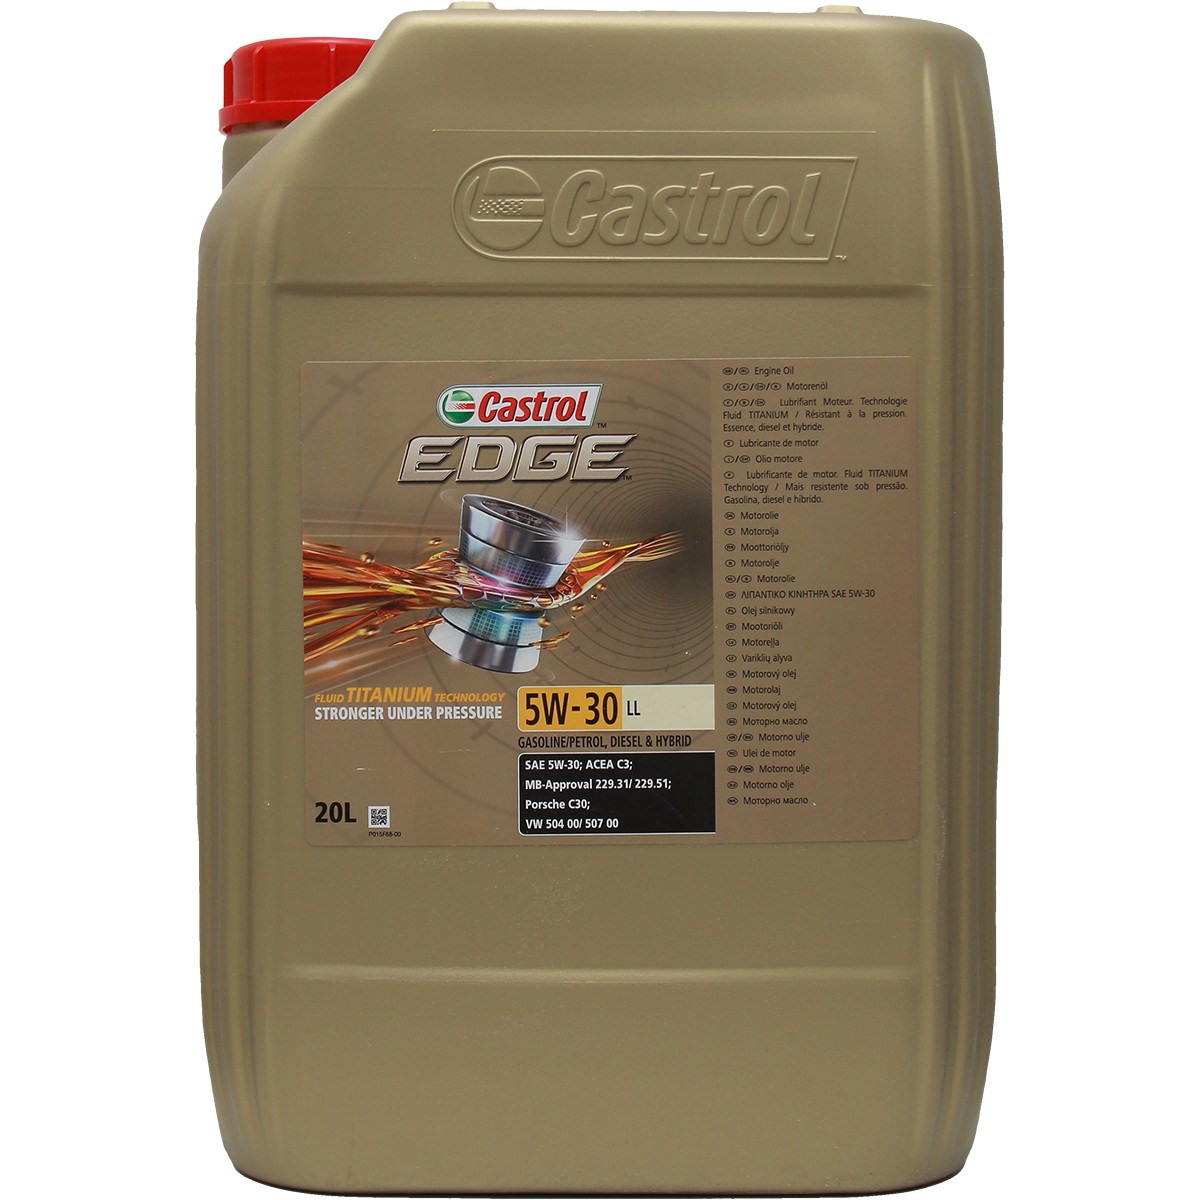 Motoröl Castrol EDGE 5W-30 LL Titanium FST günstig online kaufen!